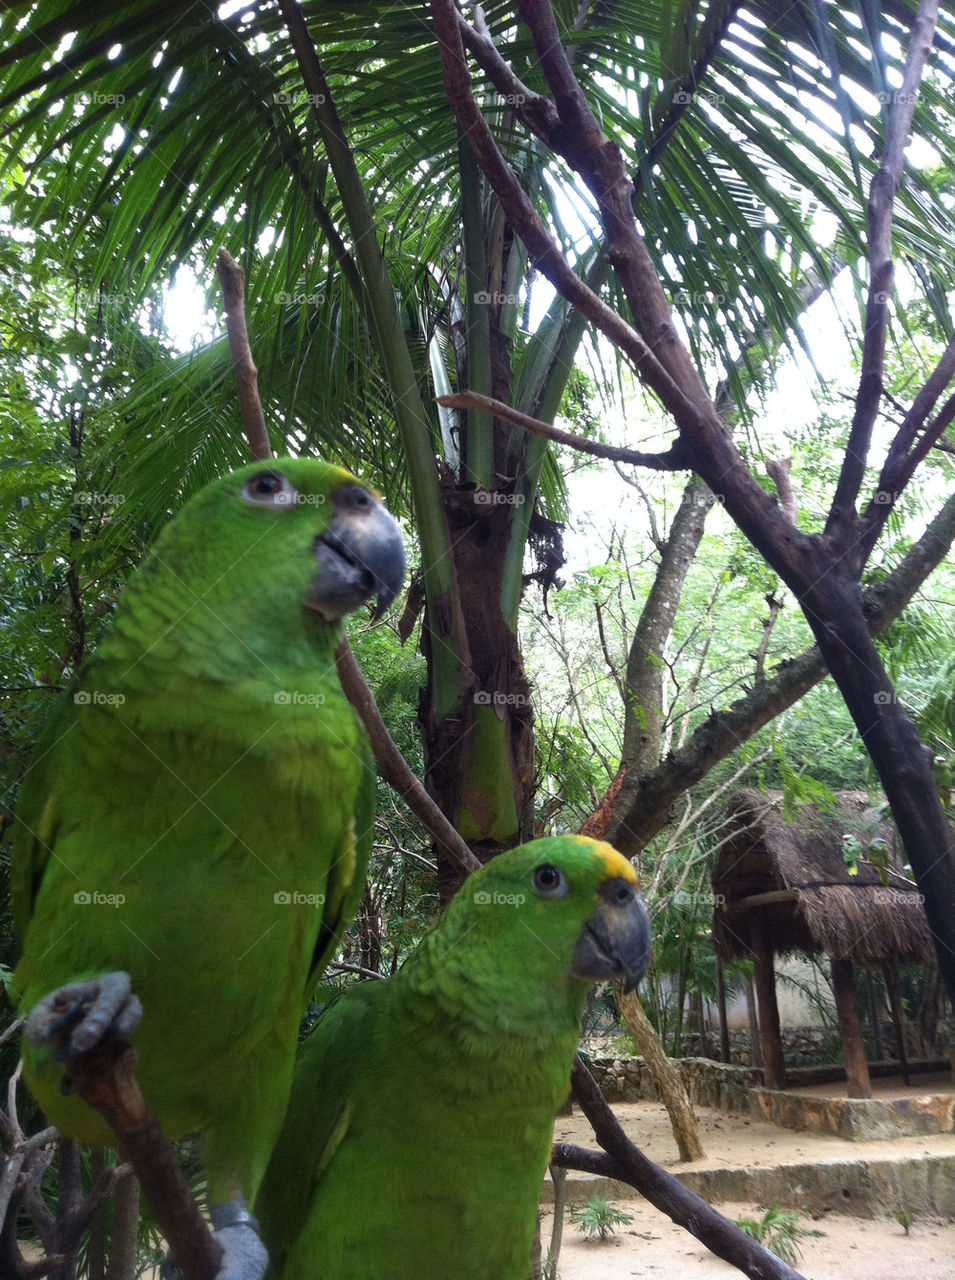 green tree pair parrots by Nikita80